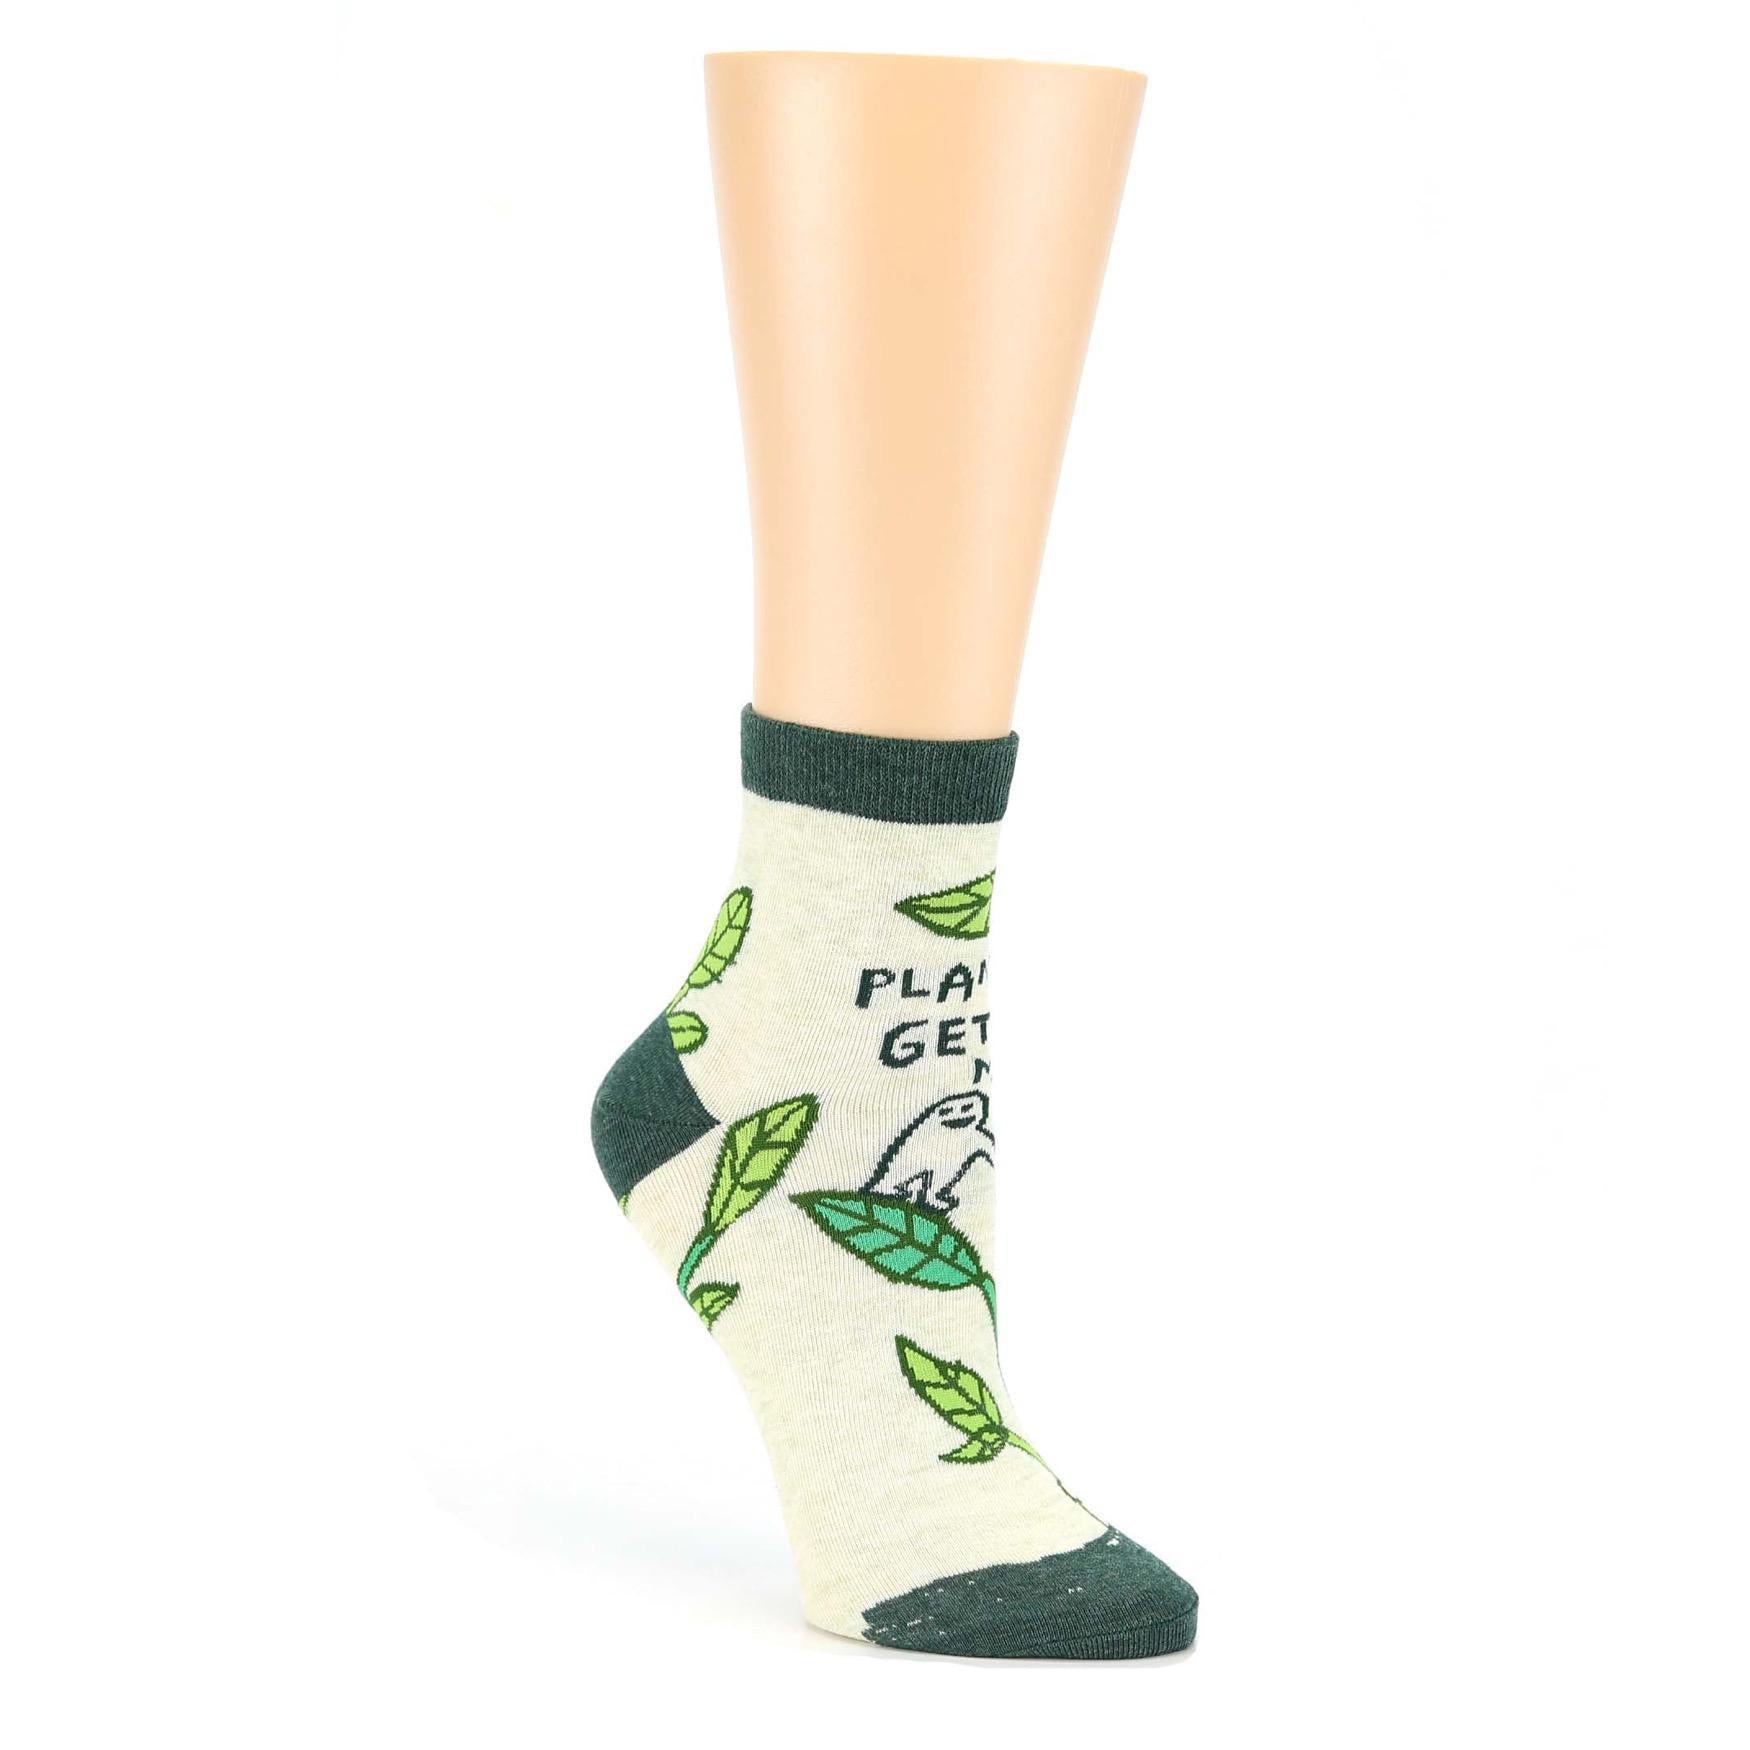 "Plants Get Me" - SW627 Ankle Socks